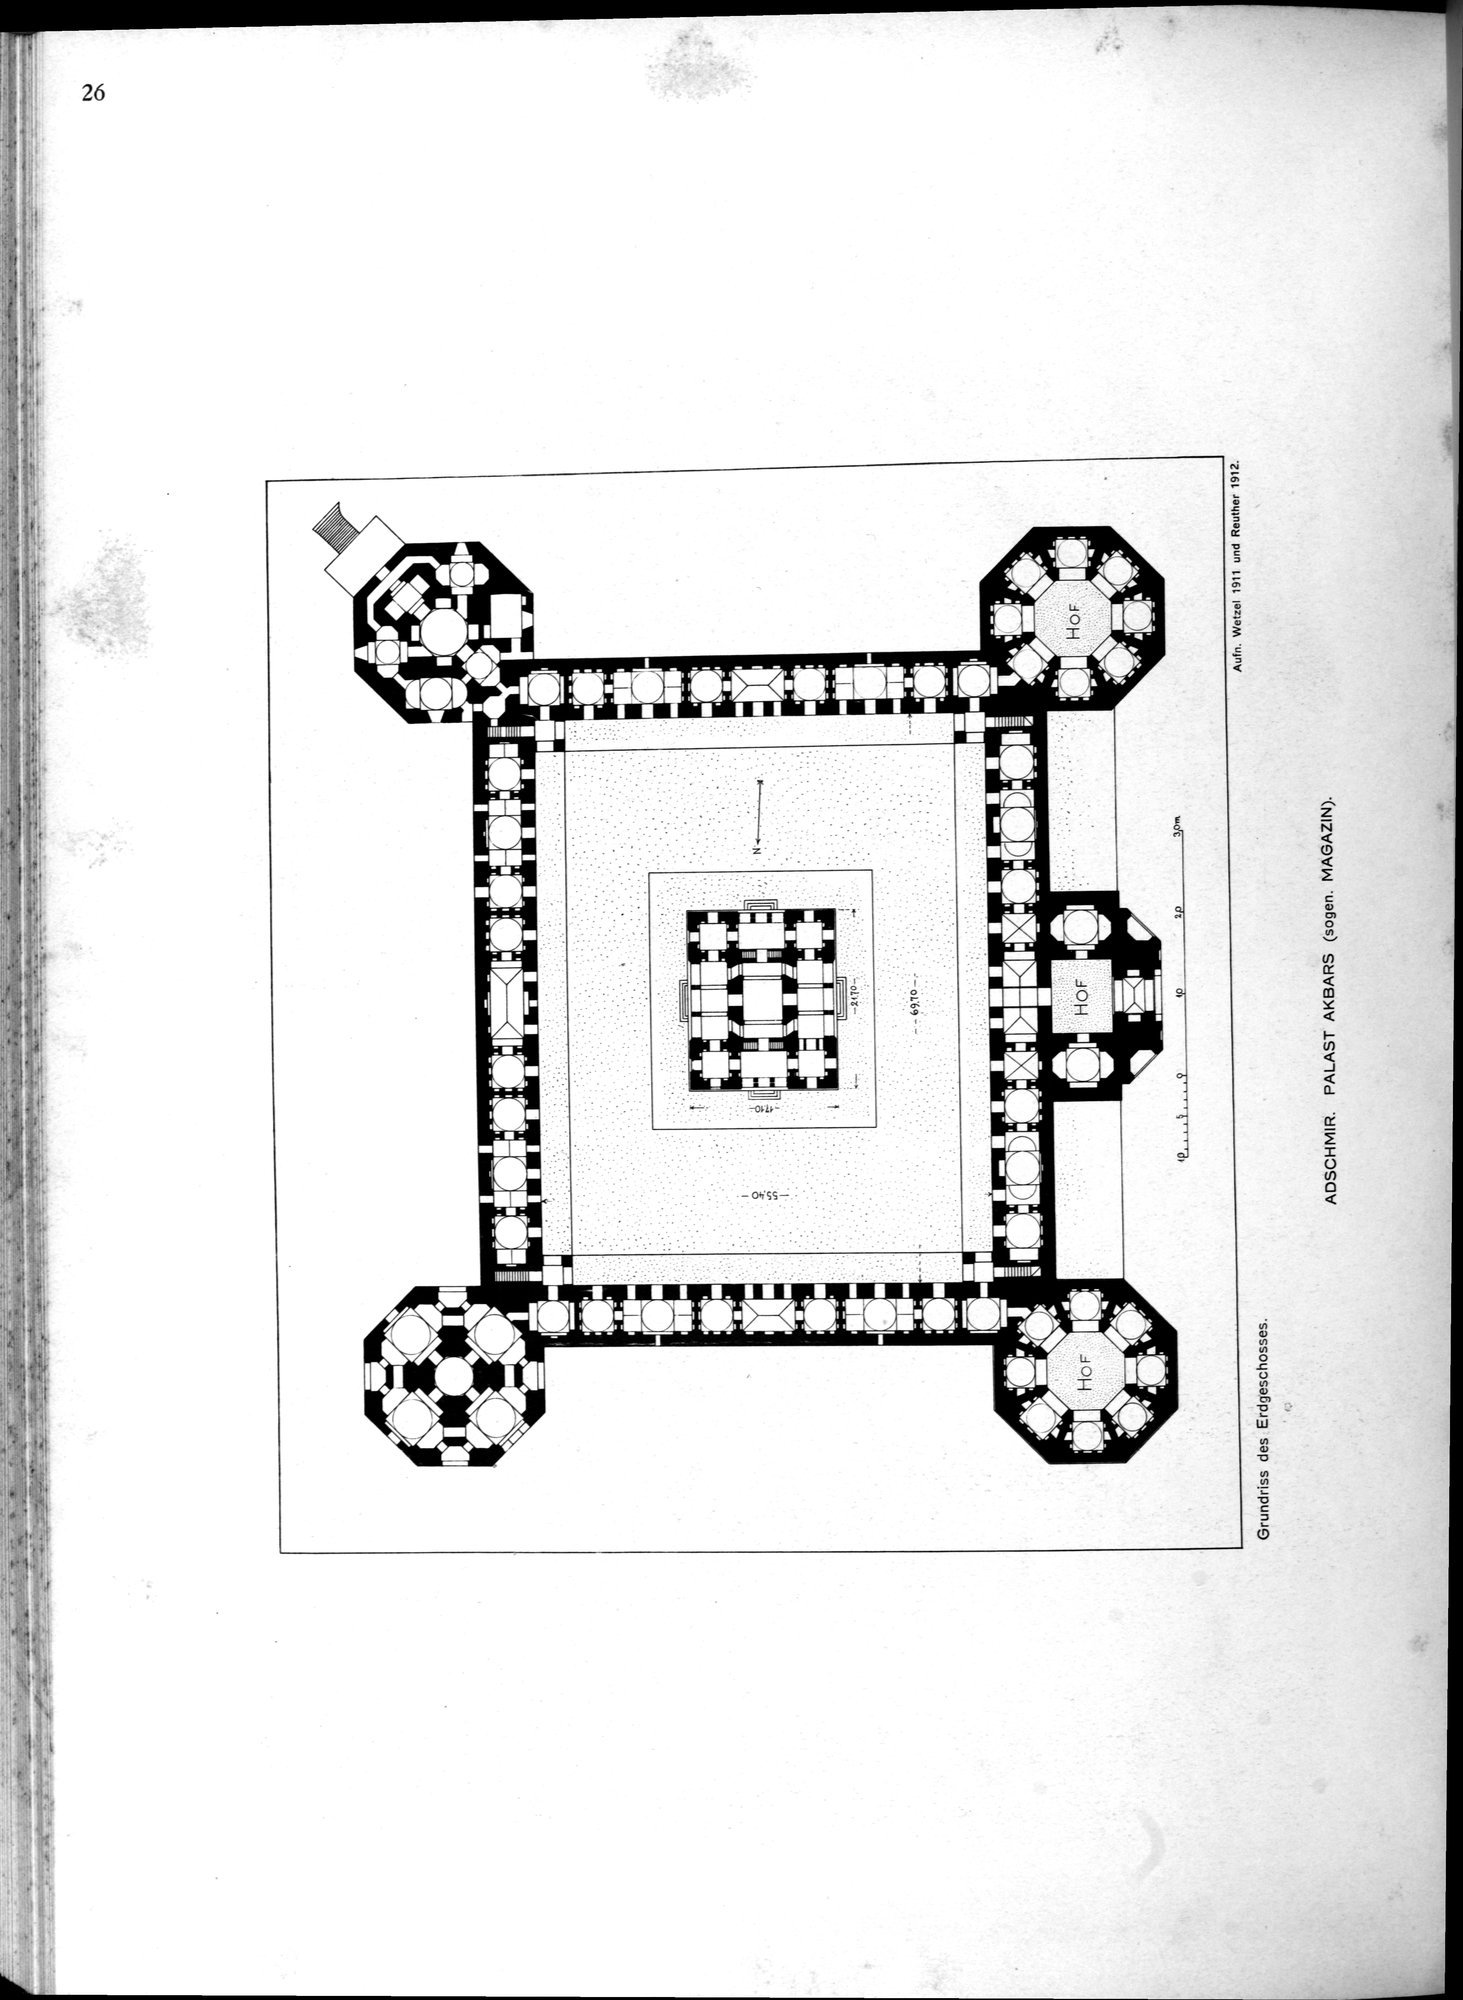 Indische Palaste und Wohnhauser : vol.1 / Page 142 (Grayscale High Resolution Image)